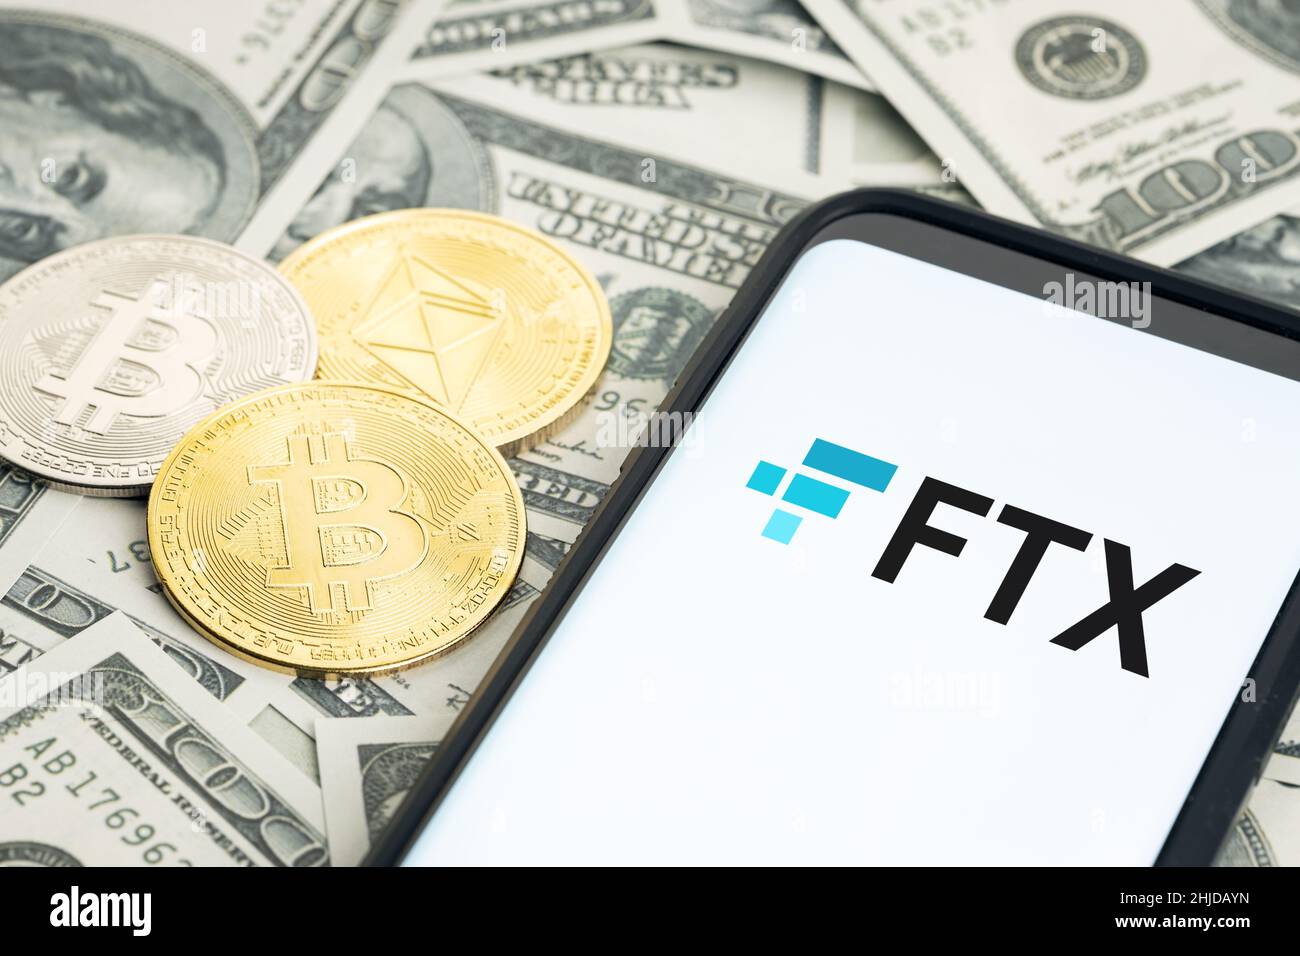 Galicia, Spanien; 28. januar 2022: FTX-Logo auf Smartphone-Bildschirm und Dollar-Banknoten sowie Bitcoin- und ethereum-Münzen Stockfoto